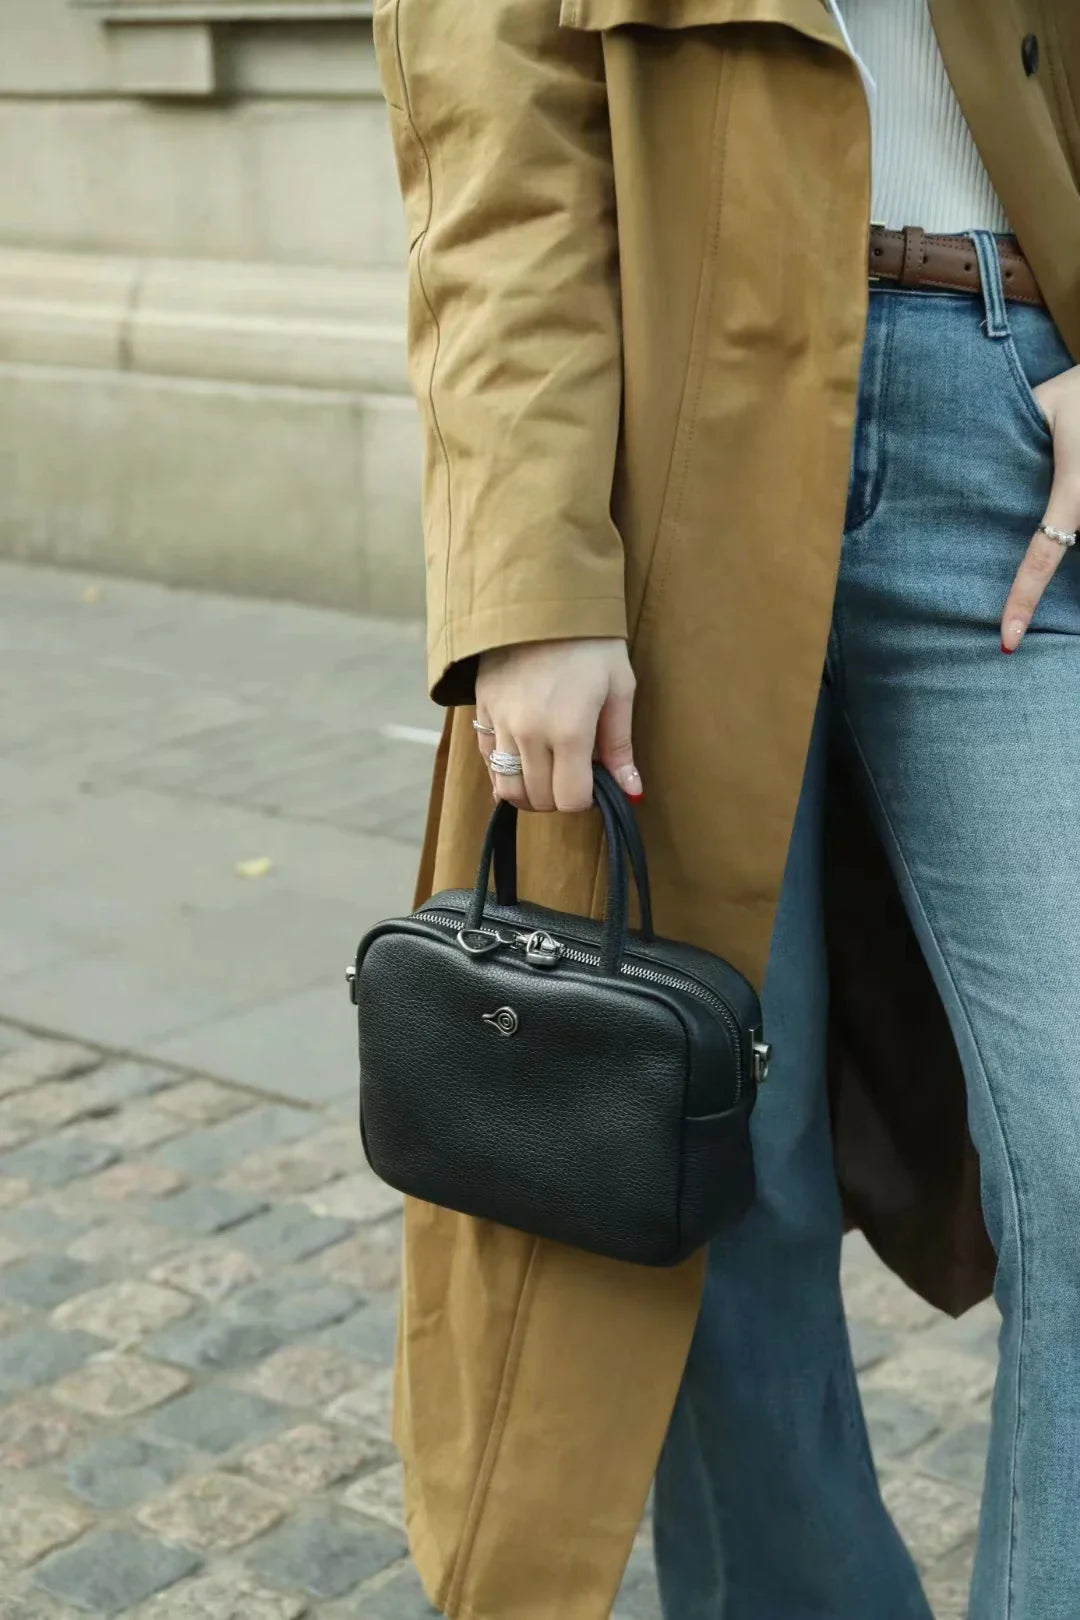 Femlion Soft Square Leather Handbag: Stylish Crossbody with Large Capacity